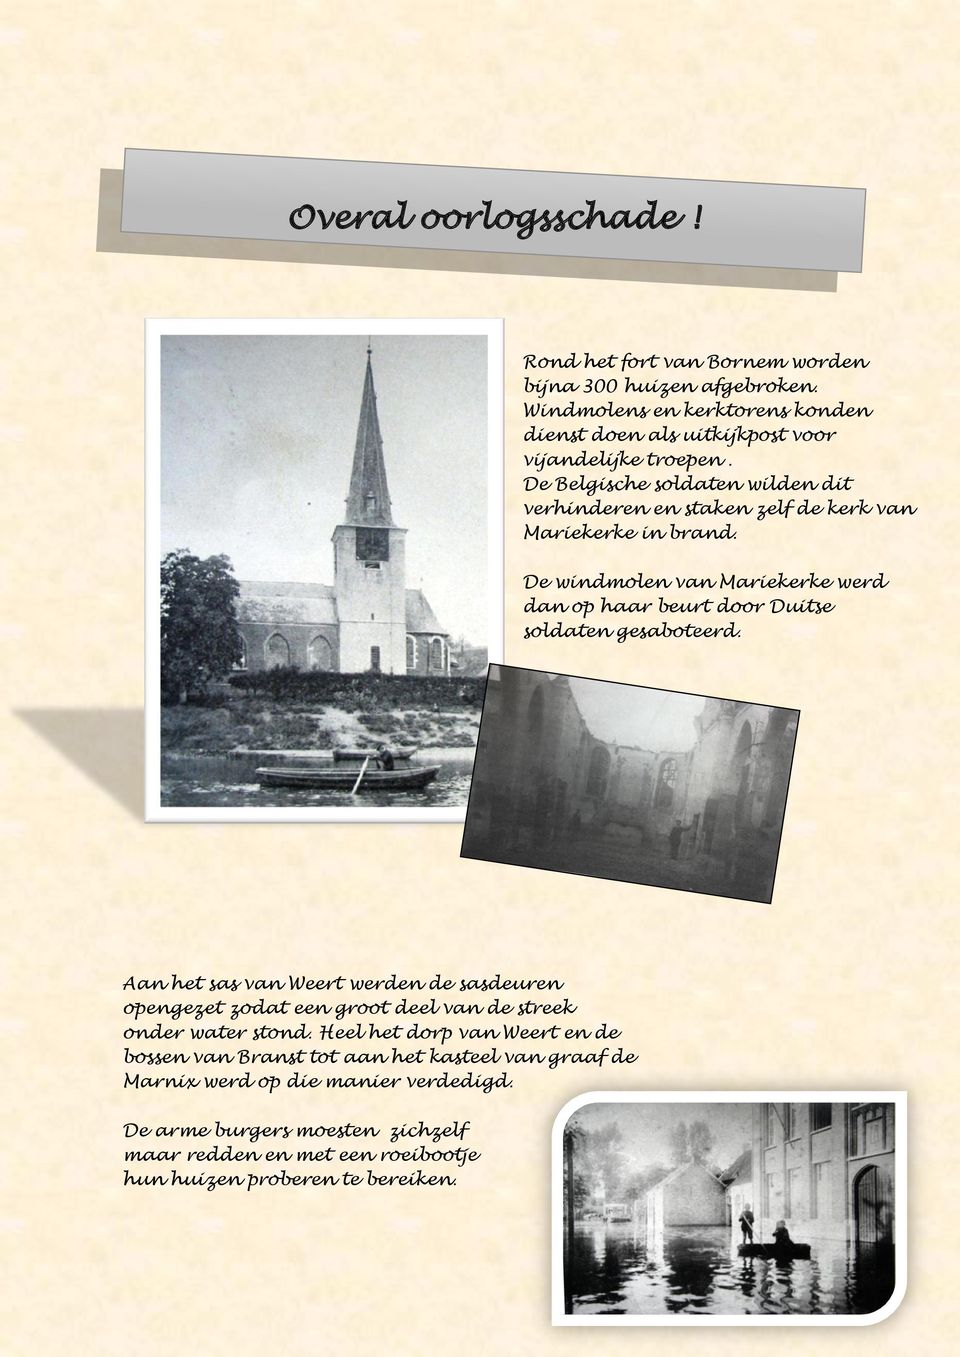 De Belgische soldaten wilden dit verhinderen en staken zelf de kerk van Mariekerke in brand.